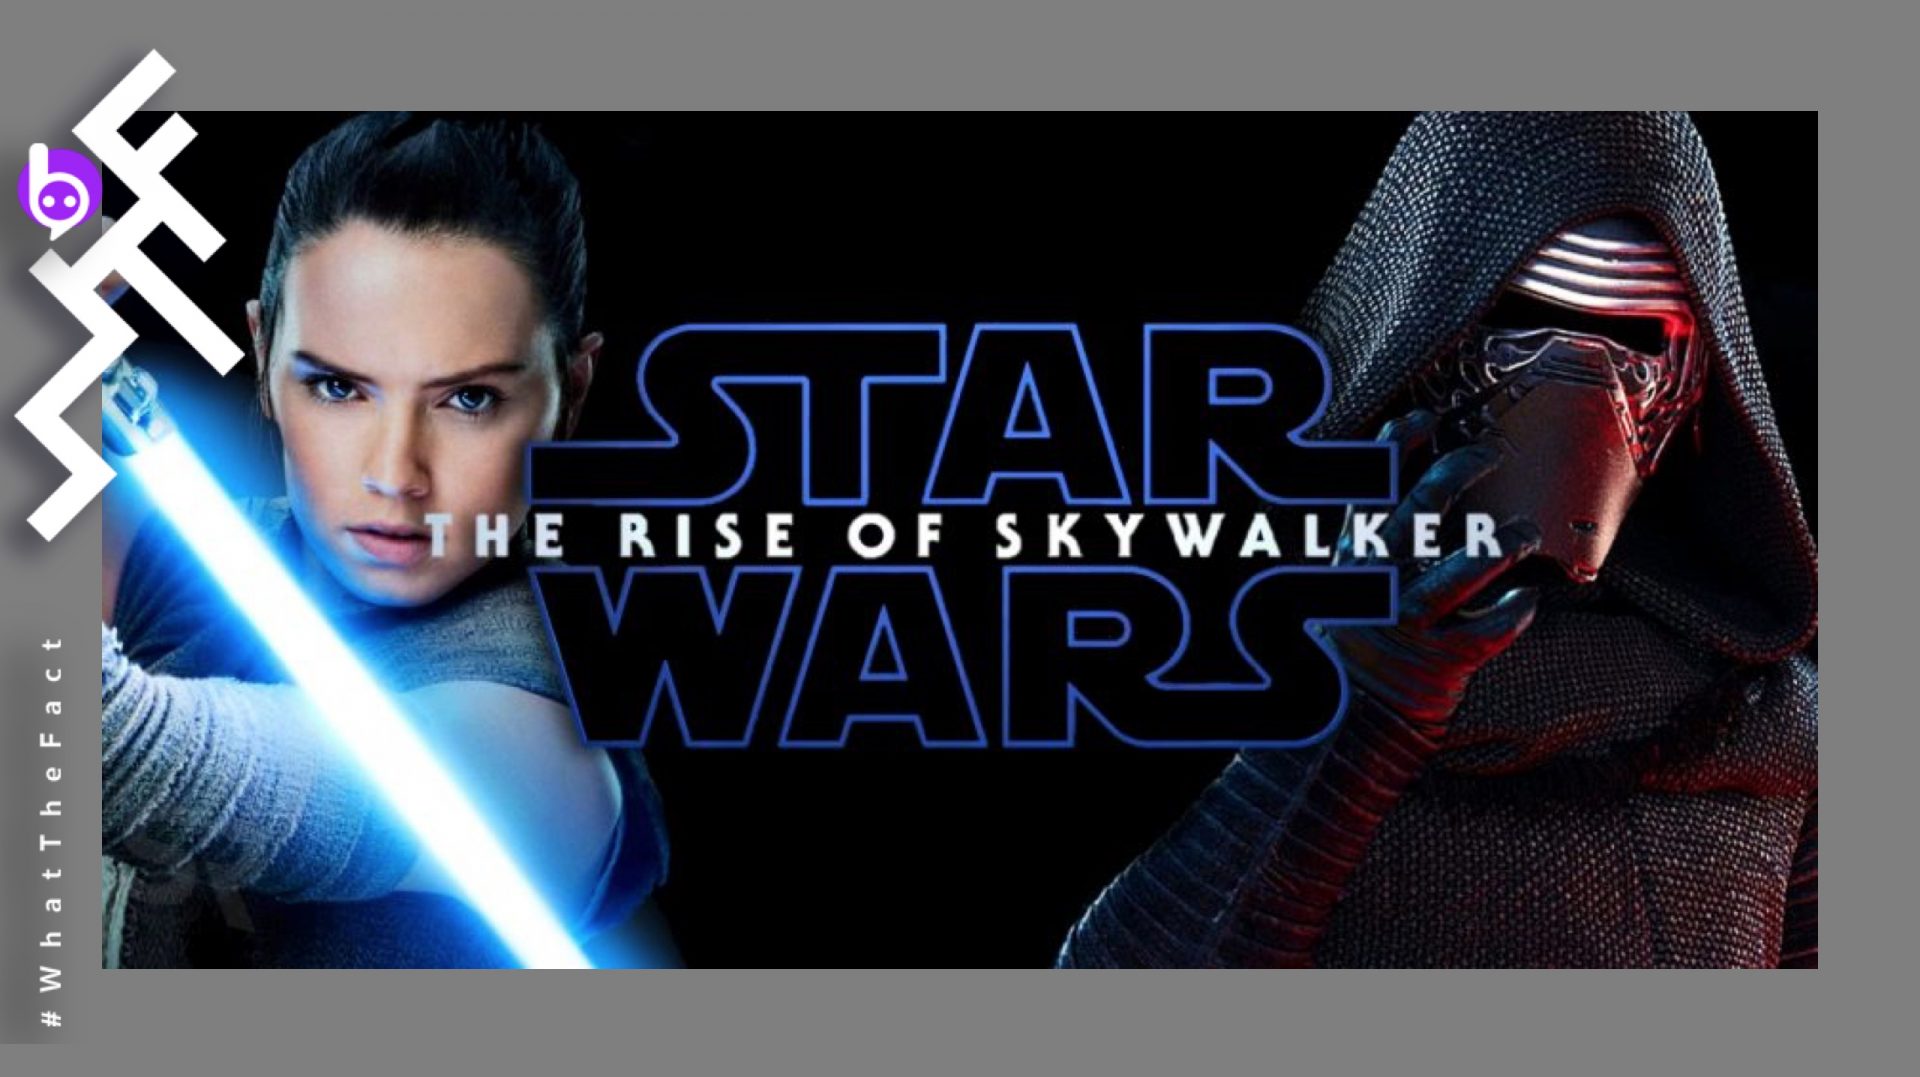 เพลงประกอบ Star Wars: The Rise of Skywalker จาก John Williams จะมีความยาวรวม 135 นาที !! และ “มีทุกธีมที่เราเคยได้ยิน” !!!